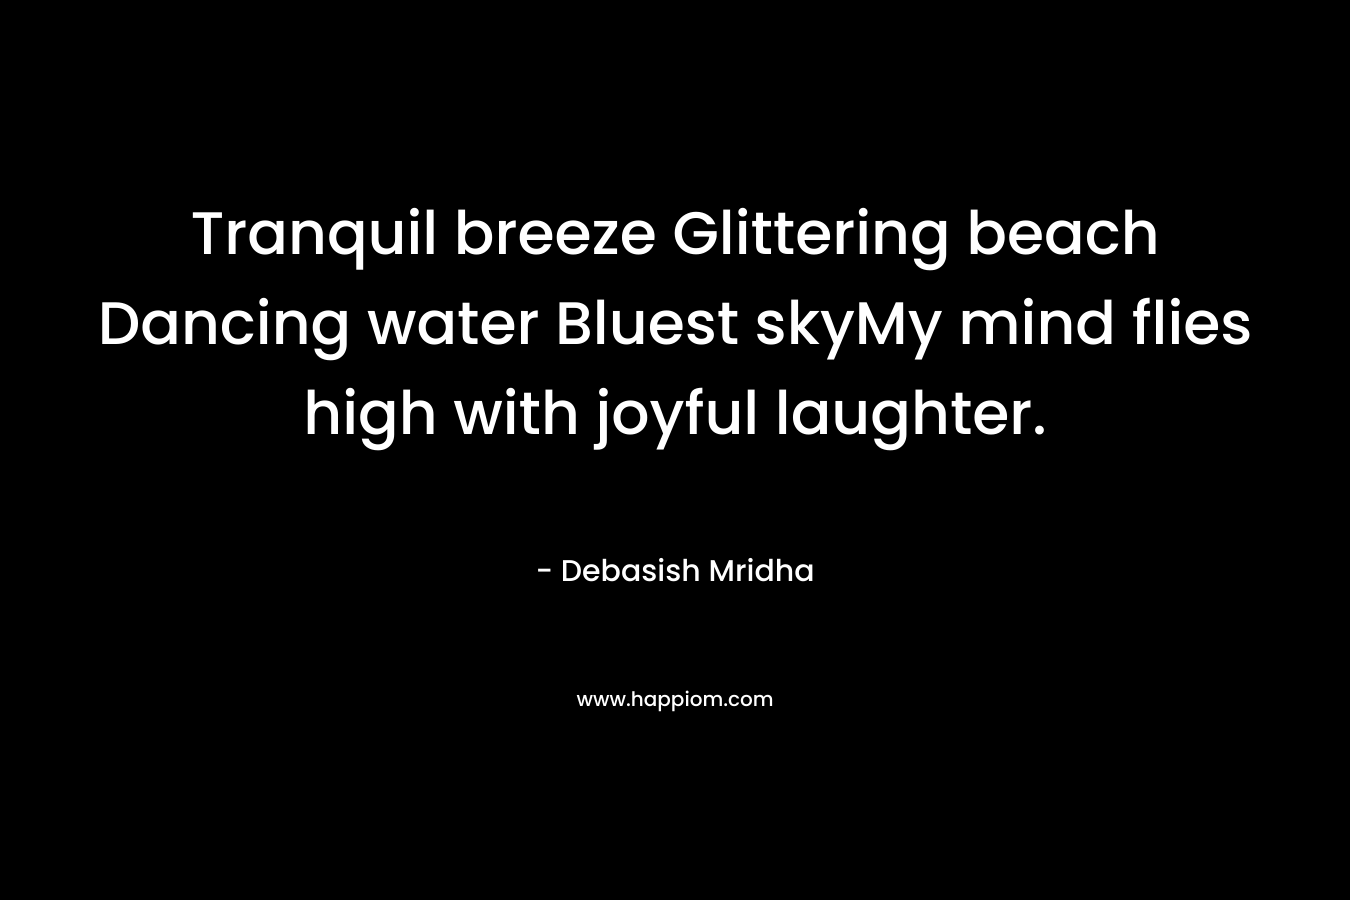 Tranquil breeze Glittering beach Dancing water Bluest skyMy mind flies high with joyful laughter.